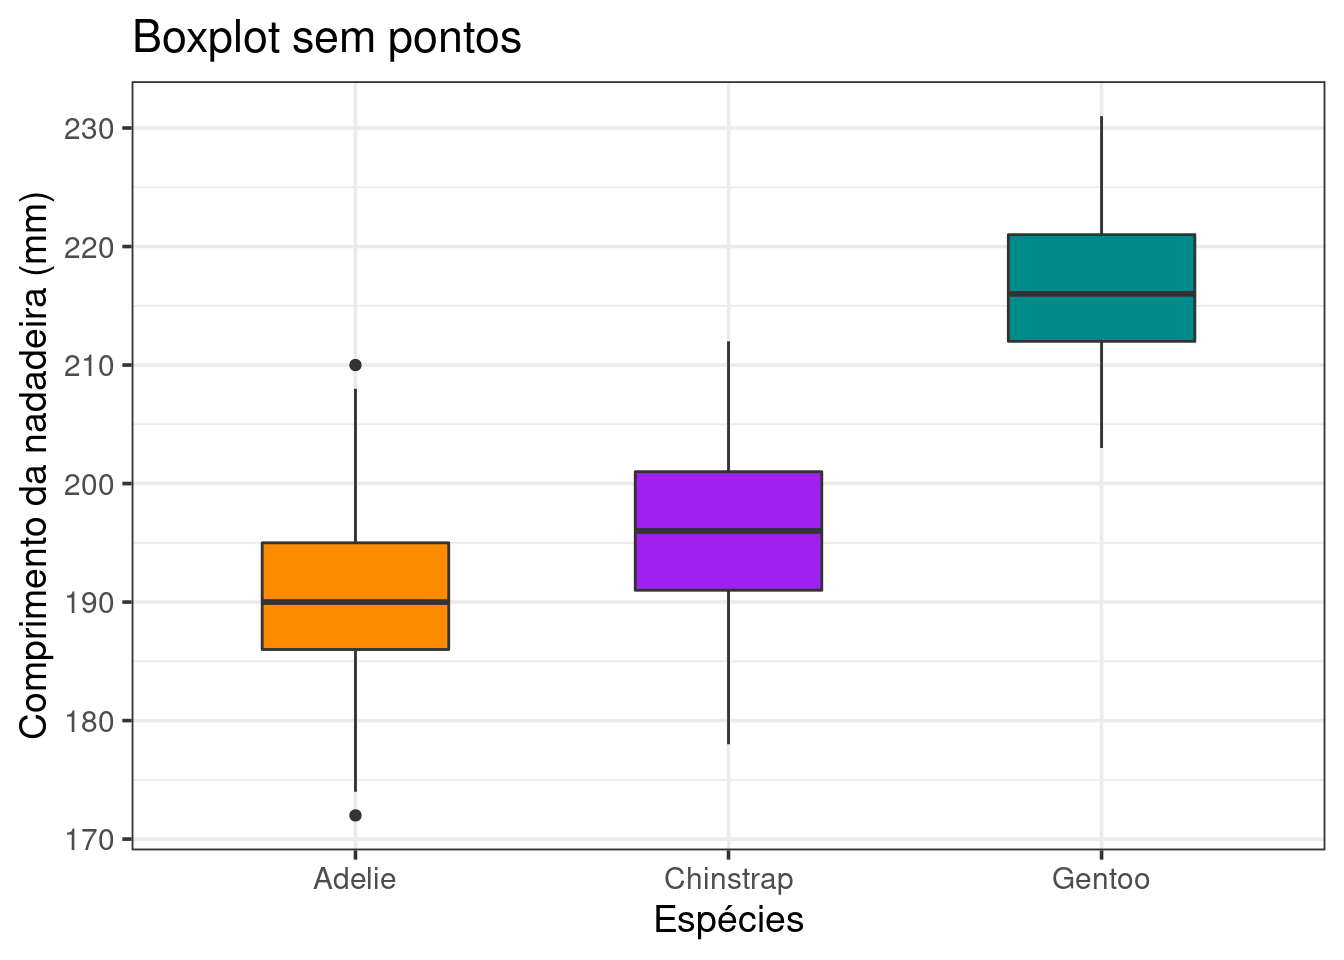 Gráfico de caixa combinado ou não com Gráfico de violino e jitter para a variável `comprimento_nadadeira` para cada espécie de penguim, com ajustes finos.